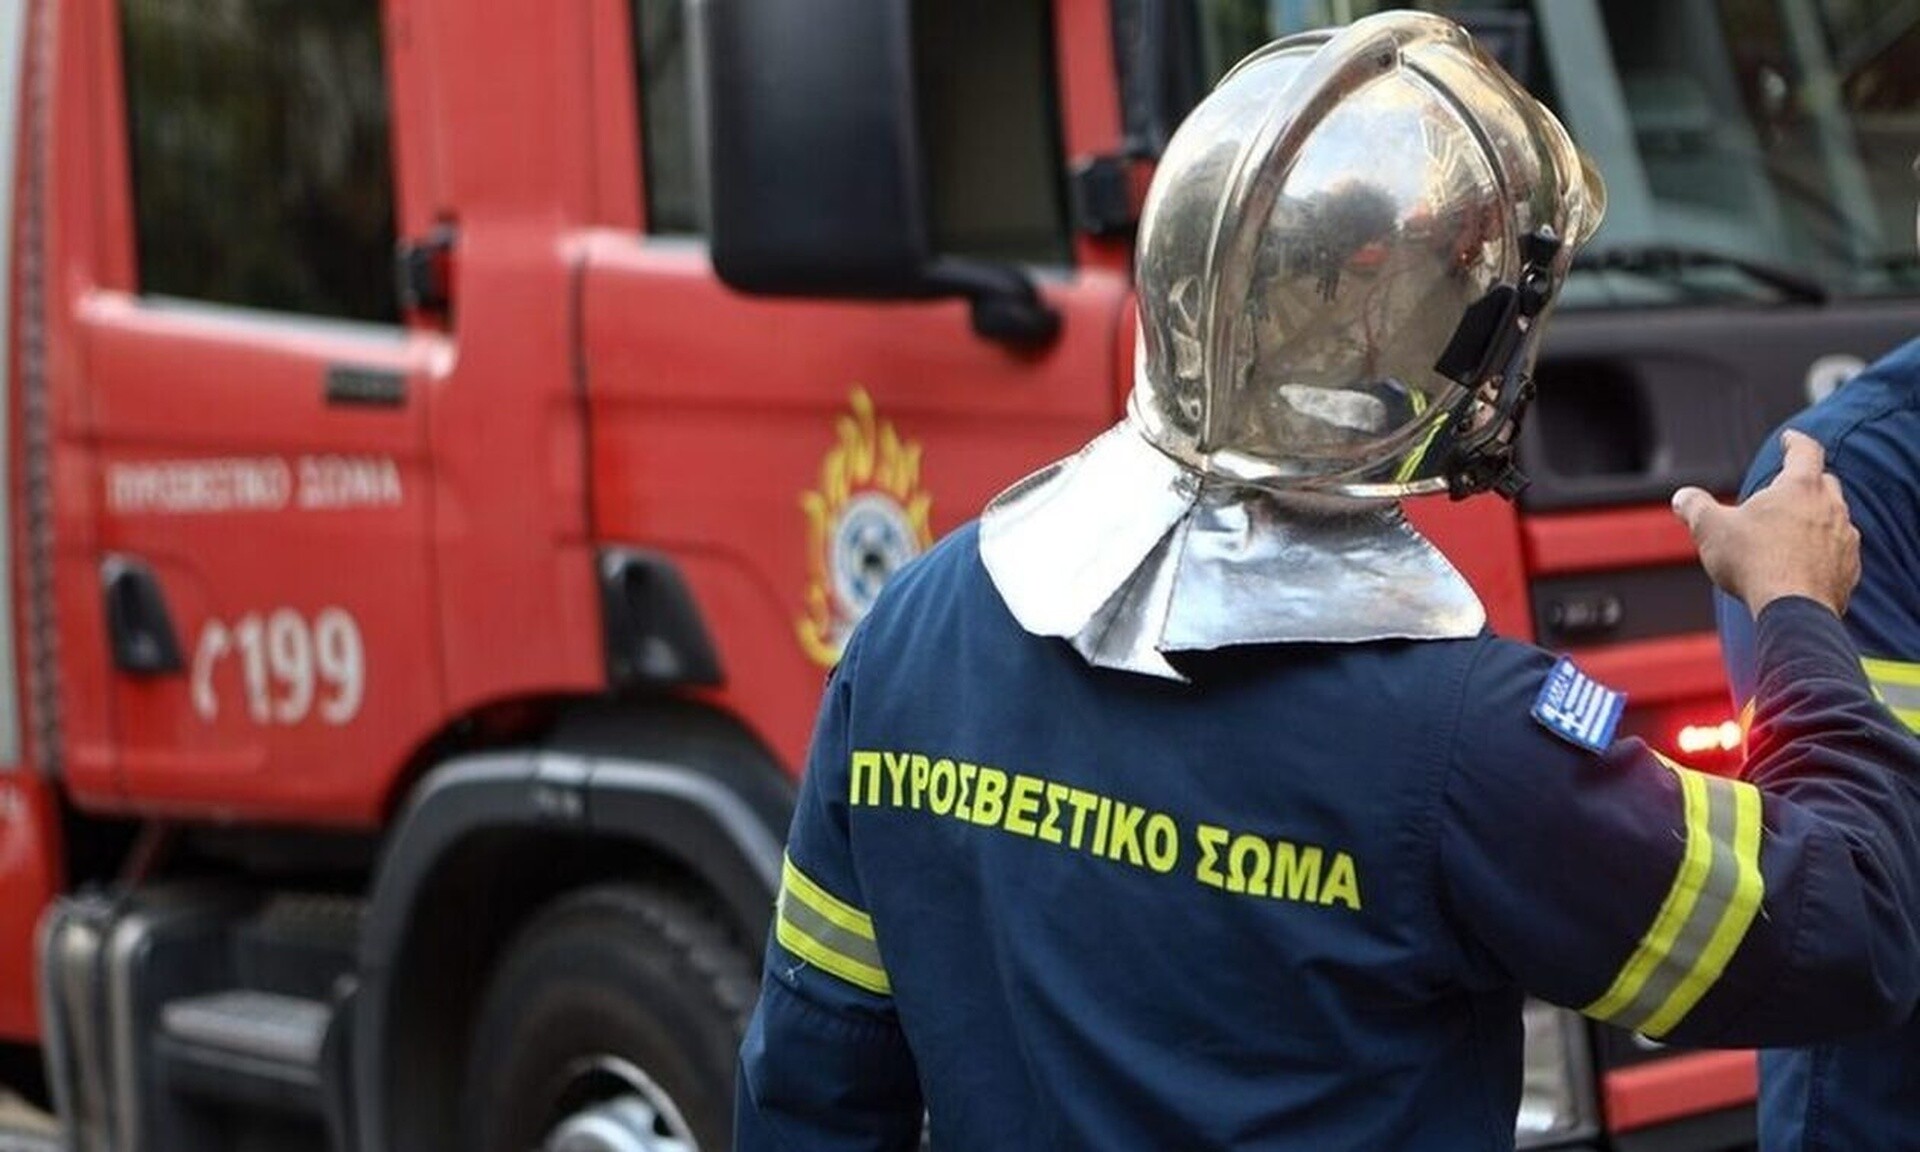 Θεσσαλονίκη: Ένα άτομο στο νοσοκομείο μετά τη φωτιά σε ταβέρνα στην Πολίχνη